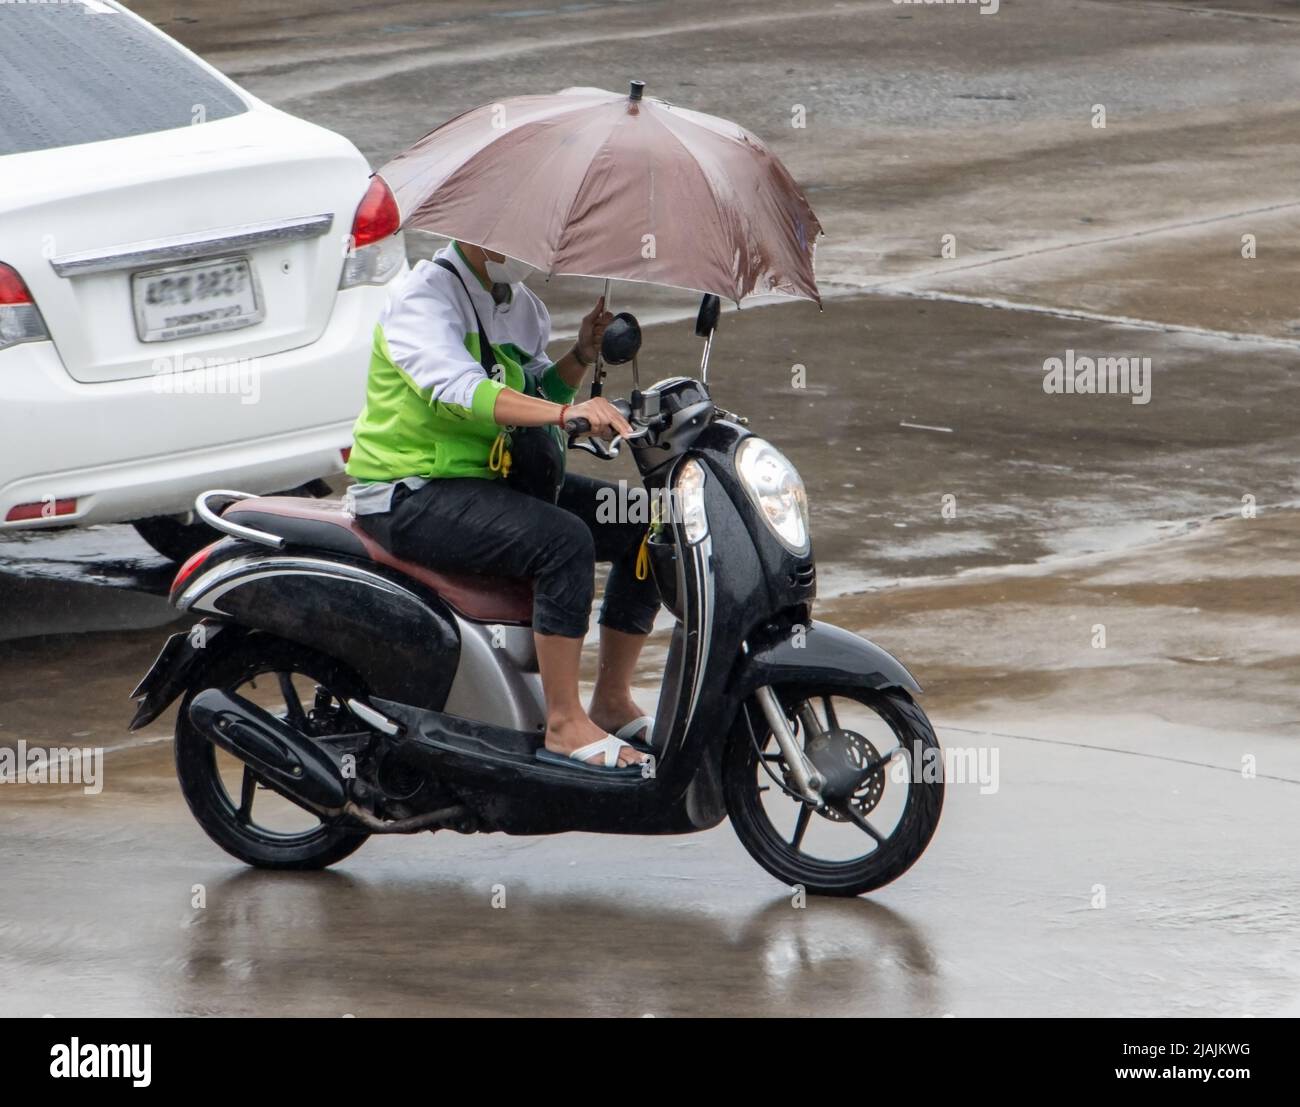 Un motociclista guida una moto con ombrello in una mano Foto Stock